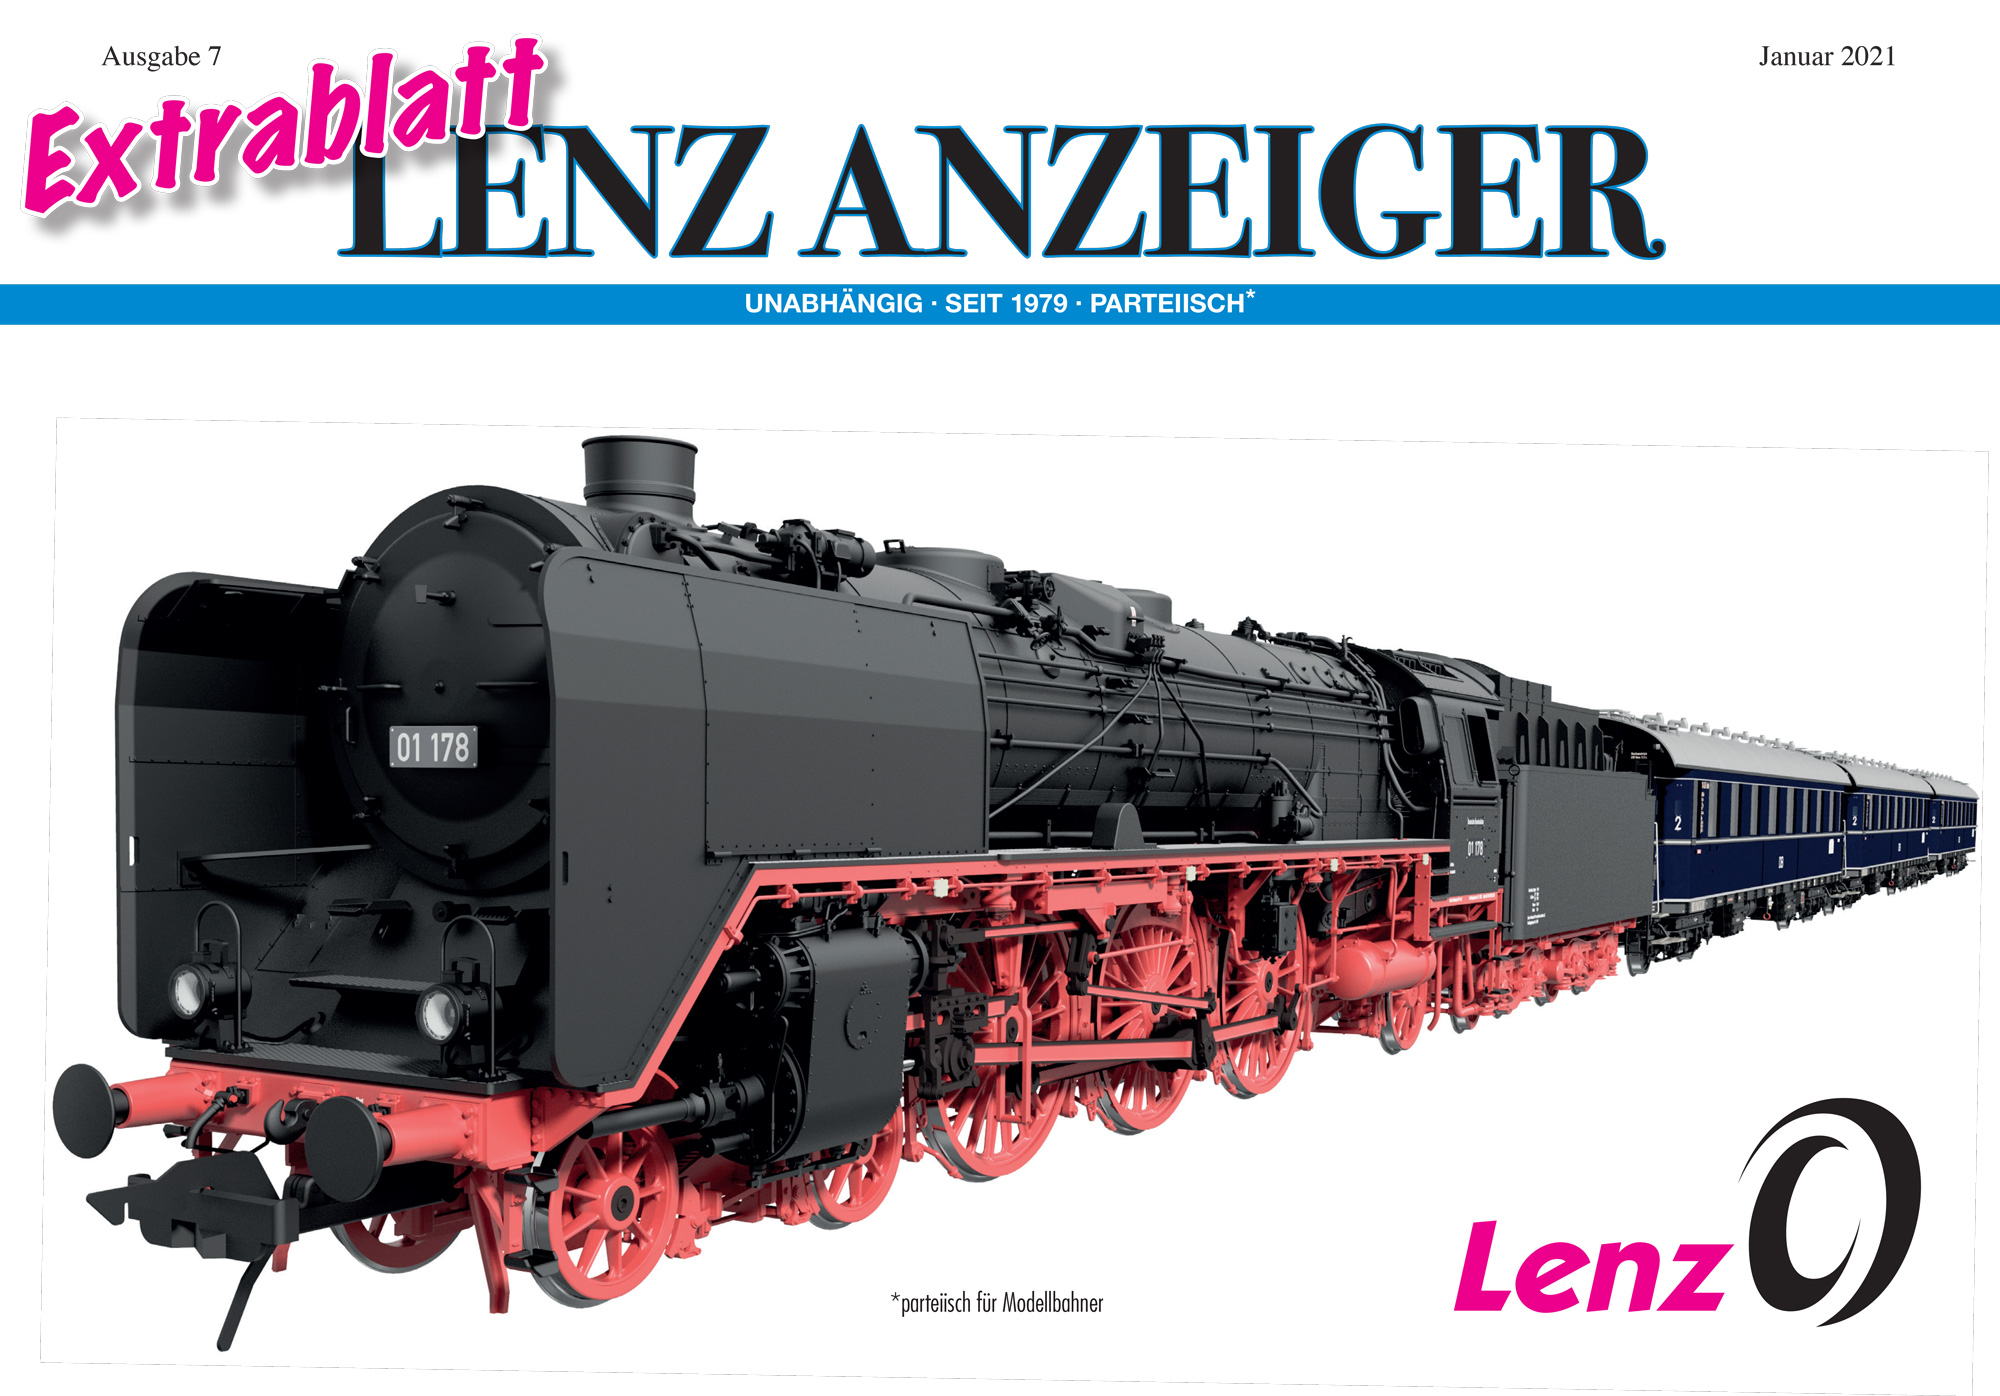 Lenz Elektronik - Announcements January 2021